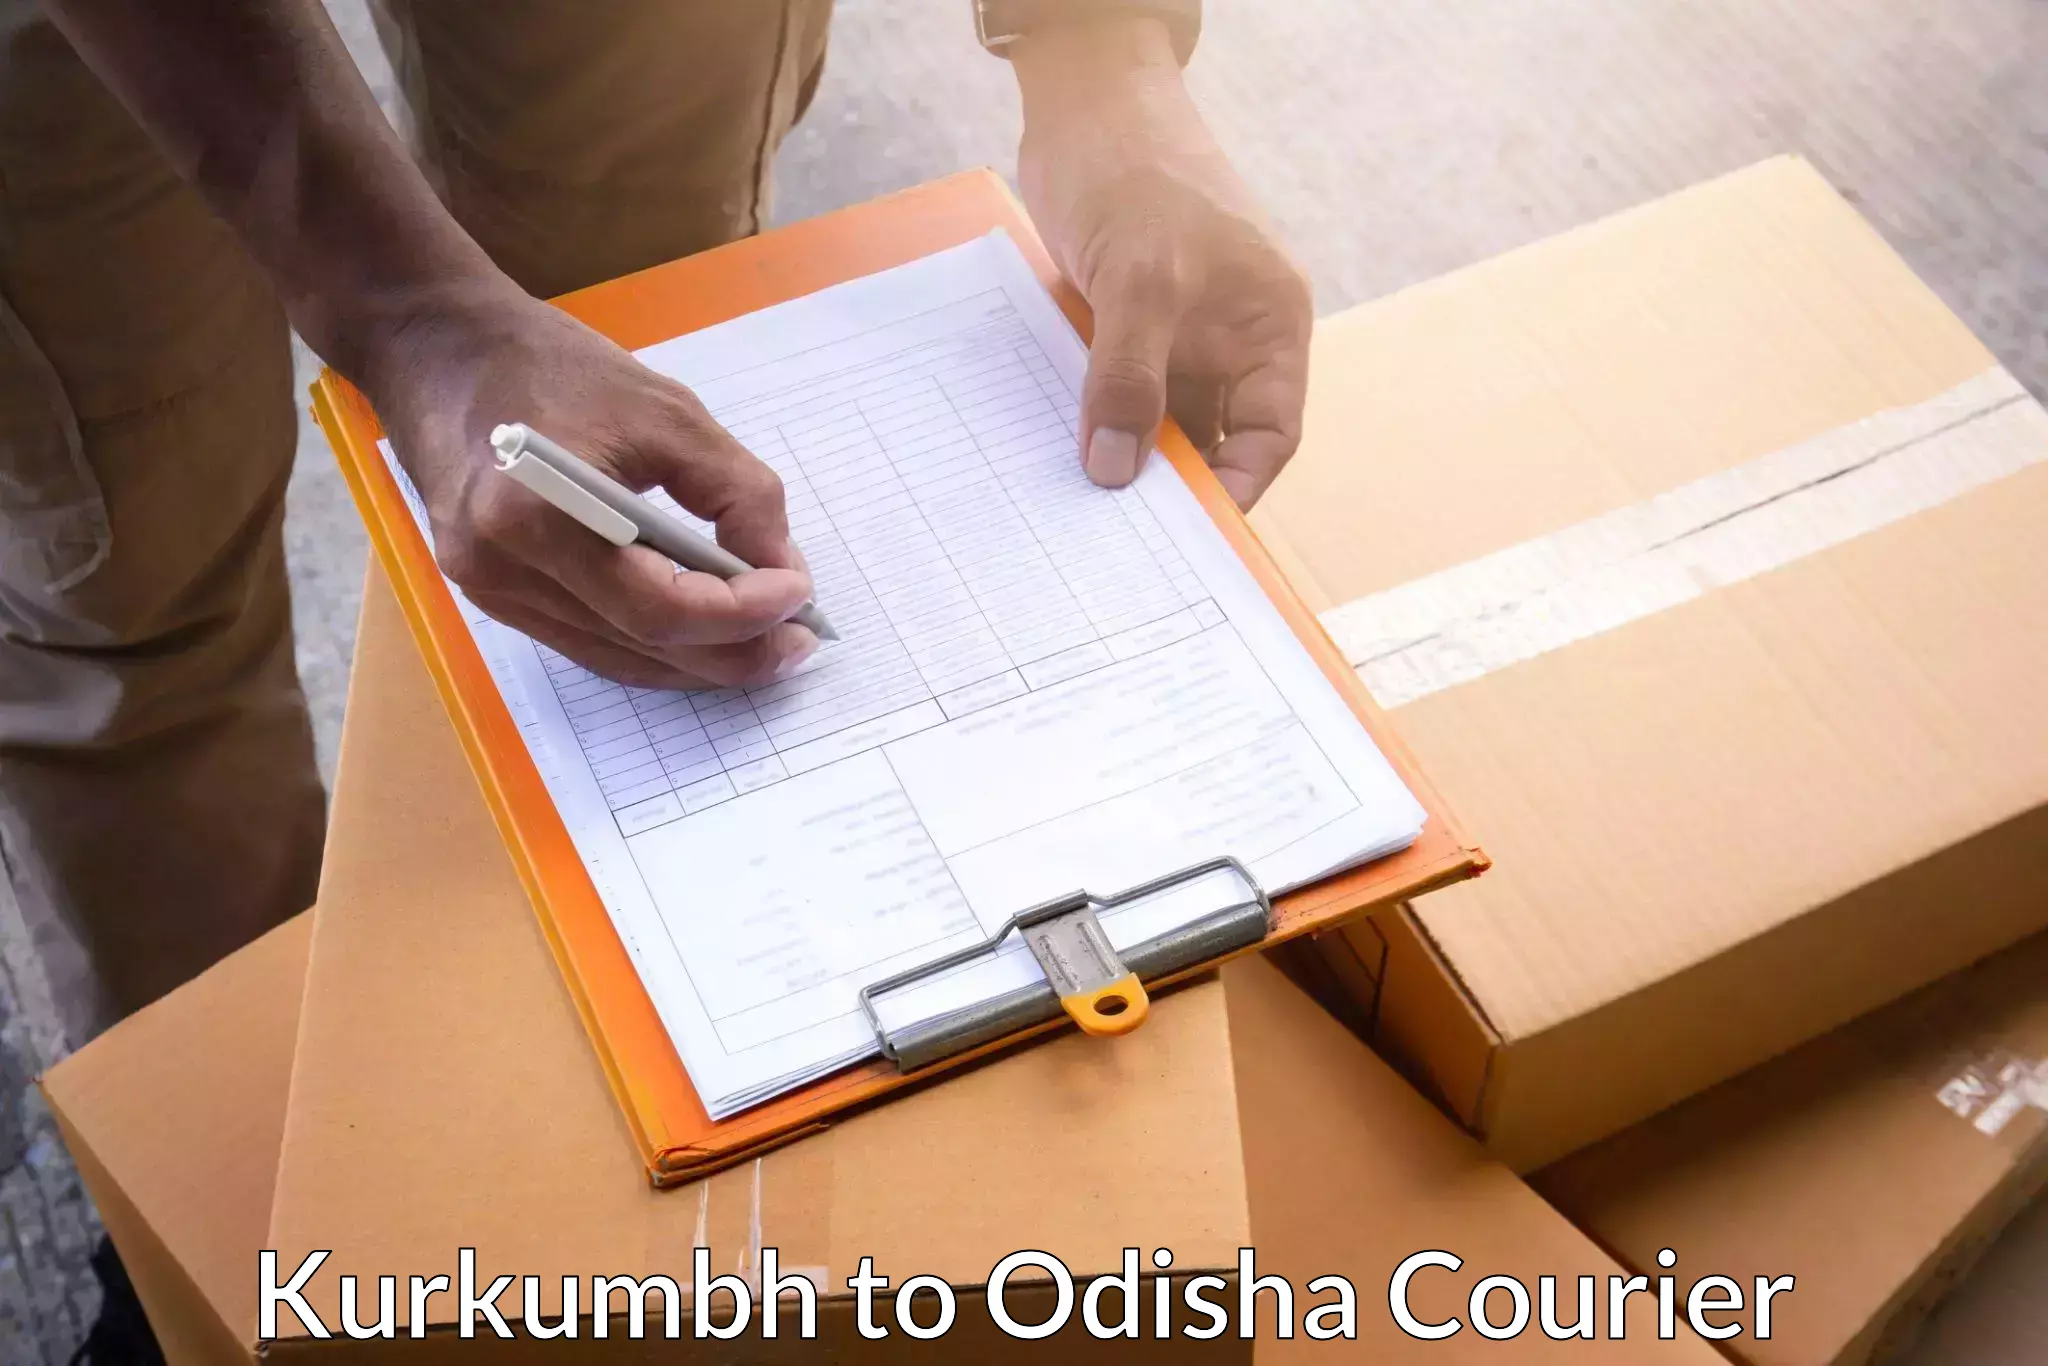 Cost-effective courier options Kurkumbh to Duburi